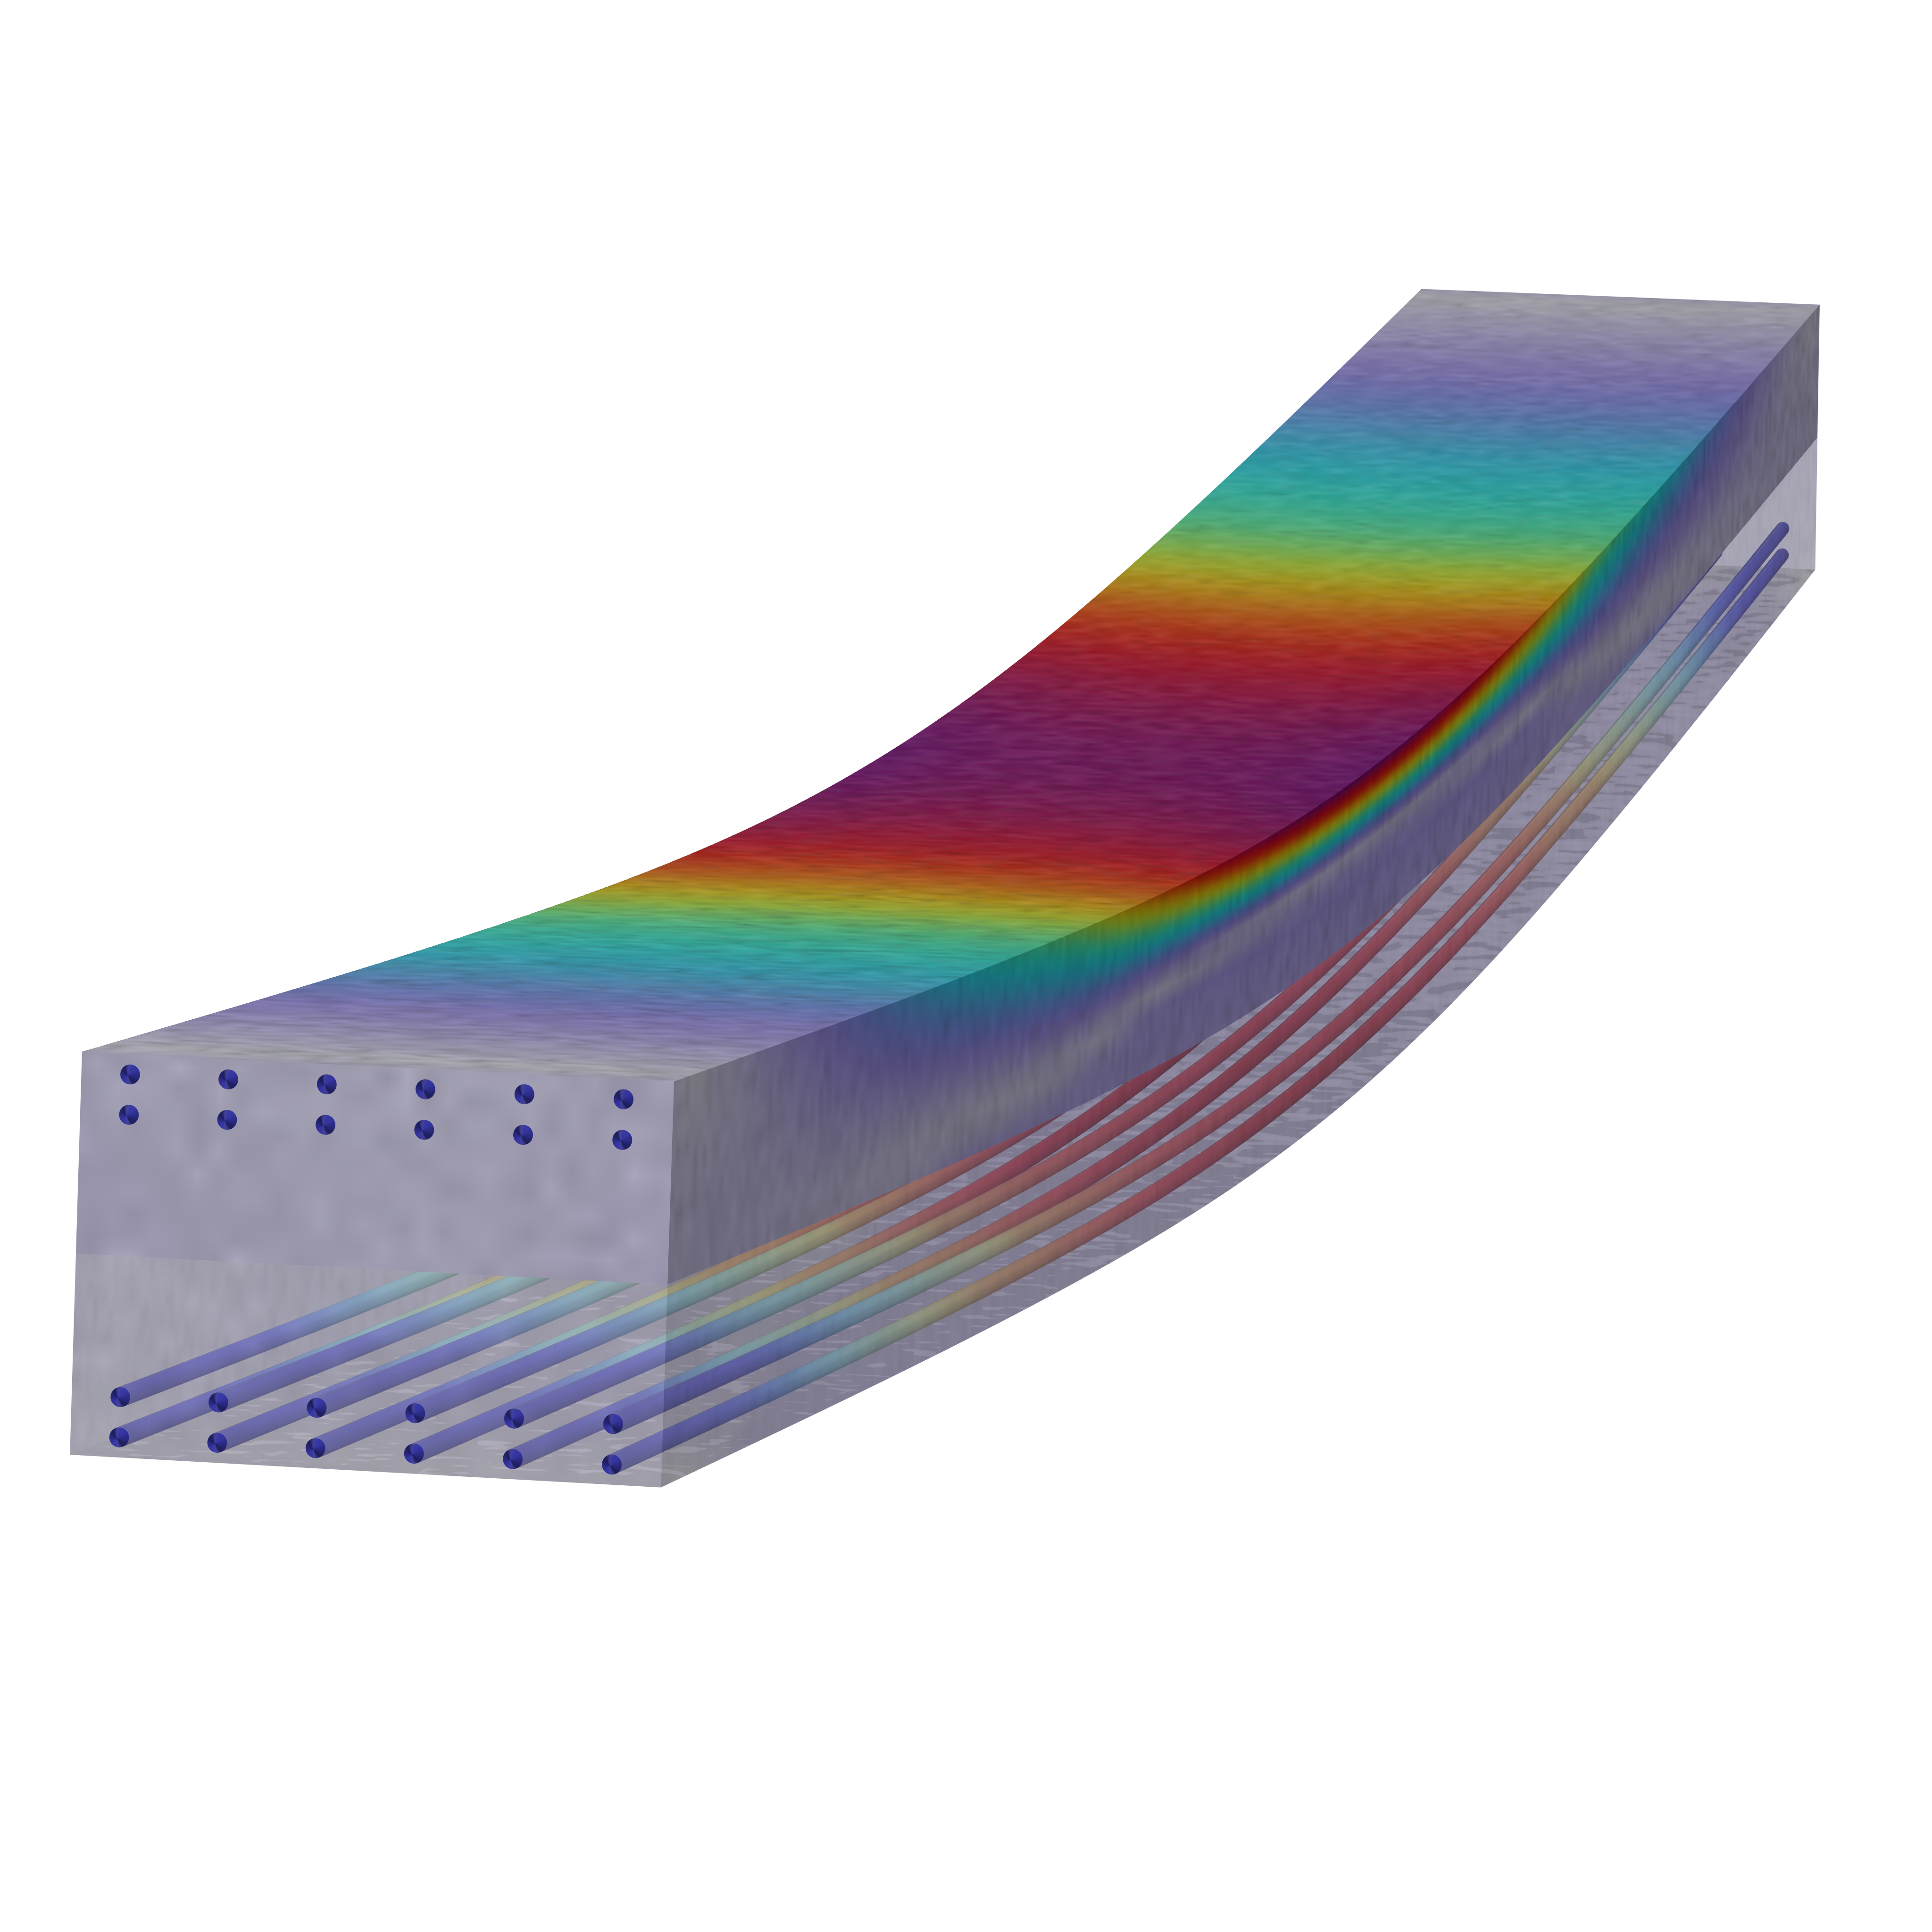 Modello di trave rettangolare in calcestruzzo che mostra la sollecitazione con barre di rinforzo in gradazione arcobaleno situate sulla parte superiore e inferiore.